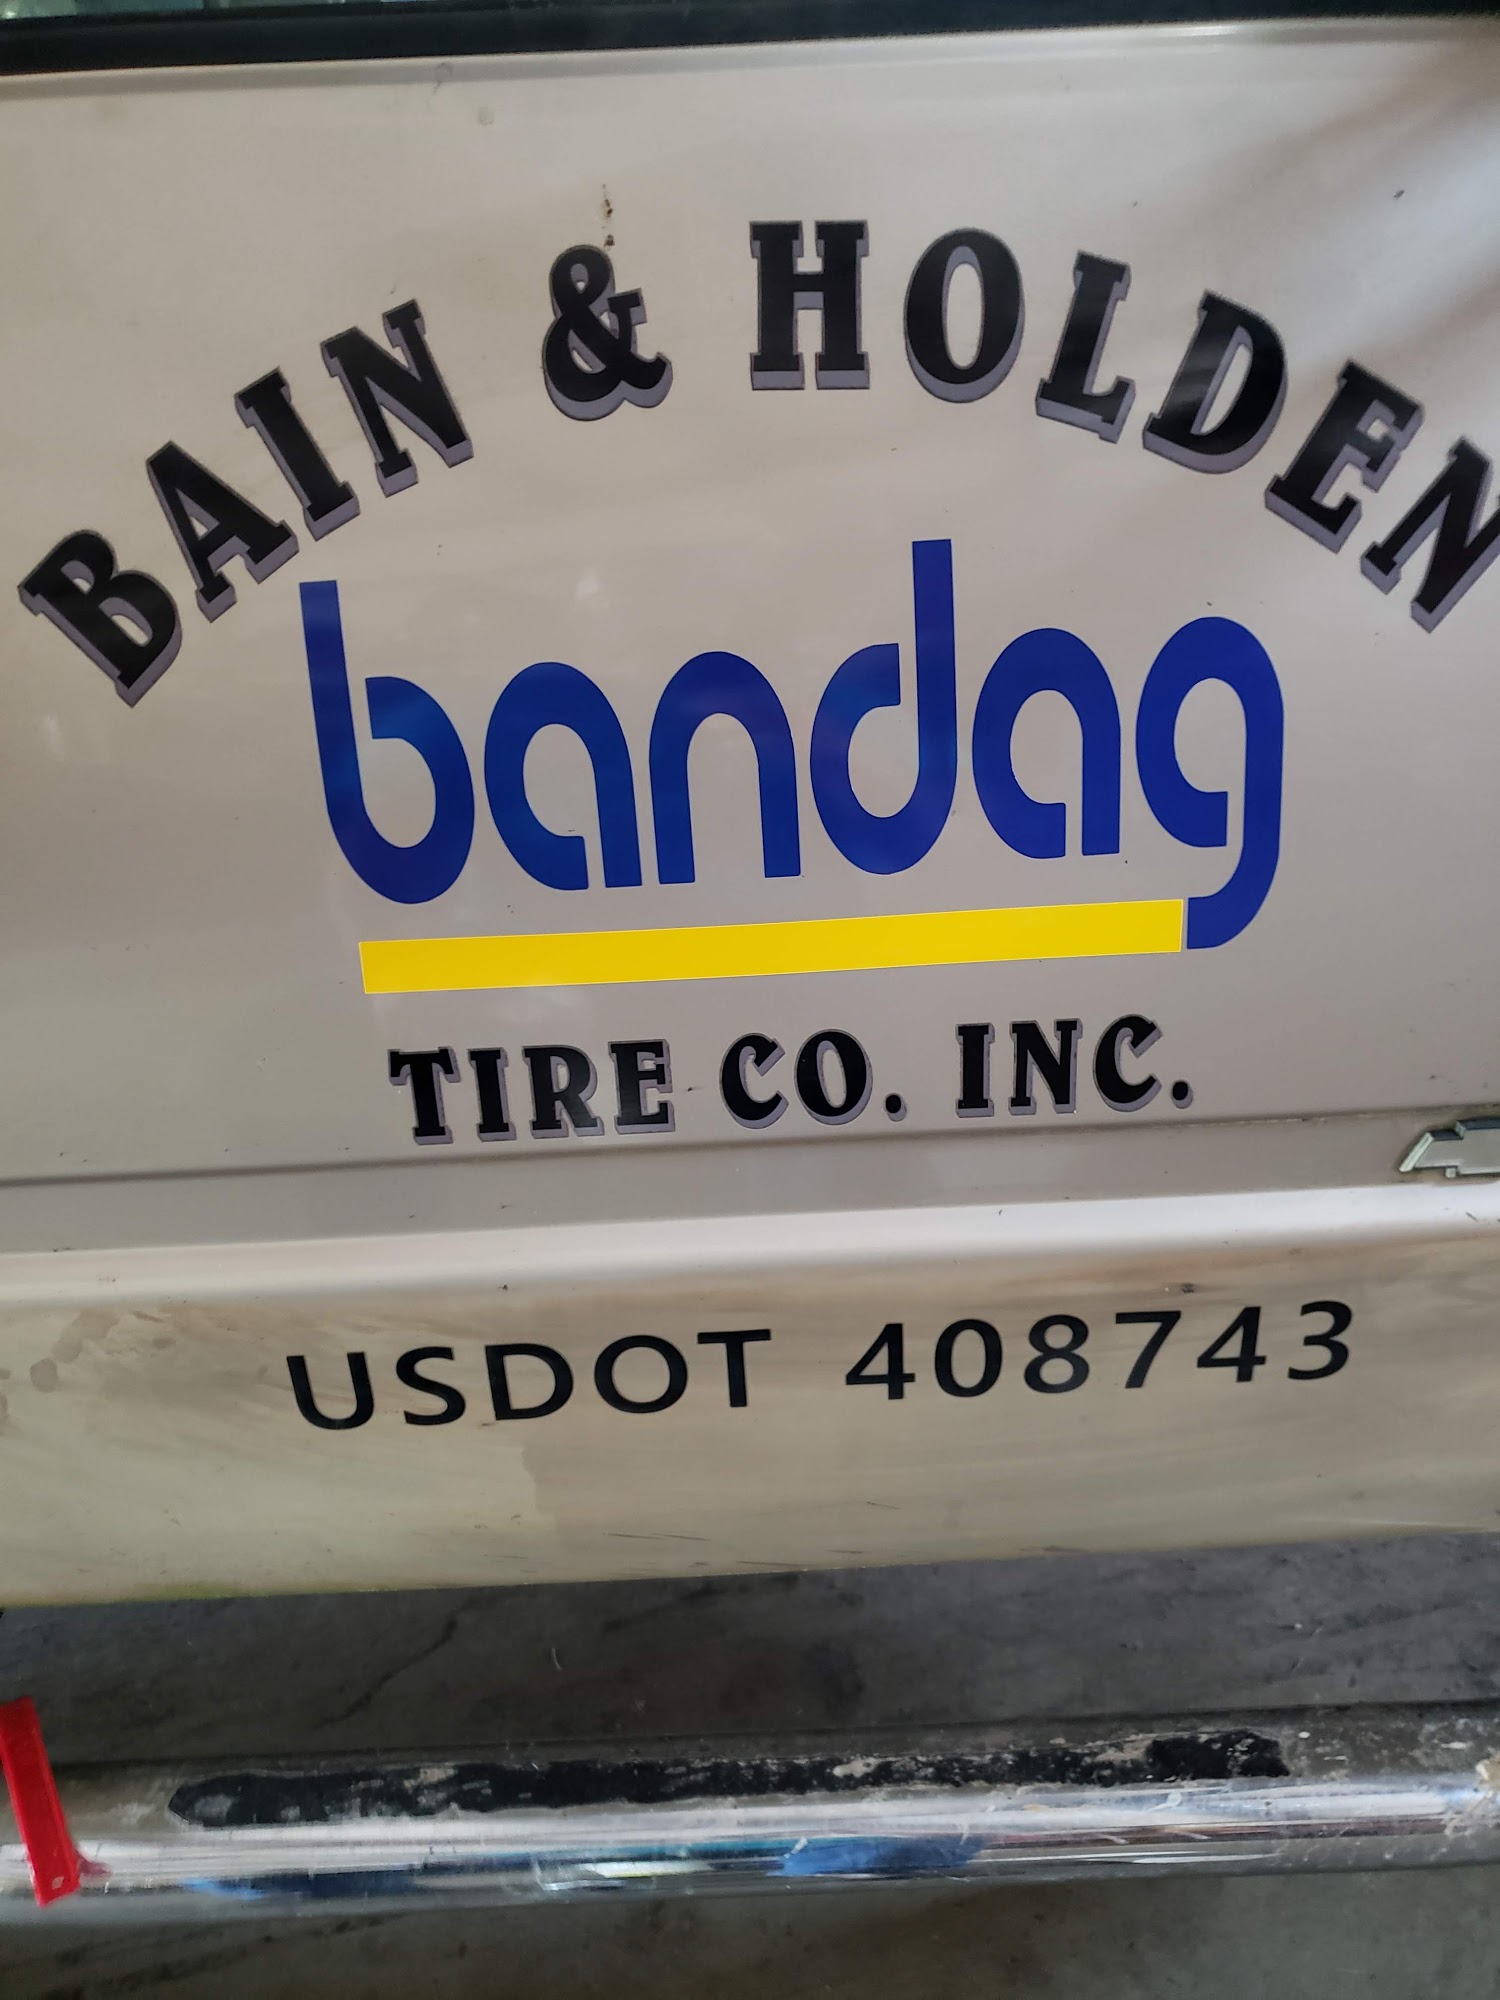 Bain & Holden Tire Co